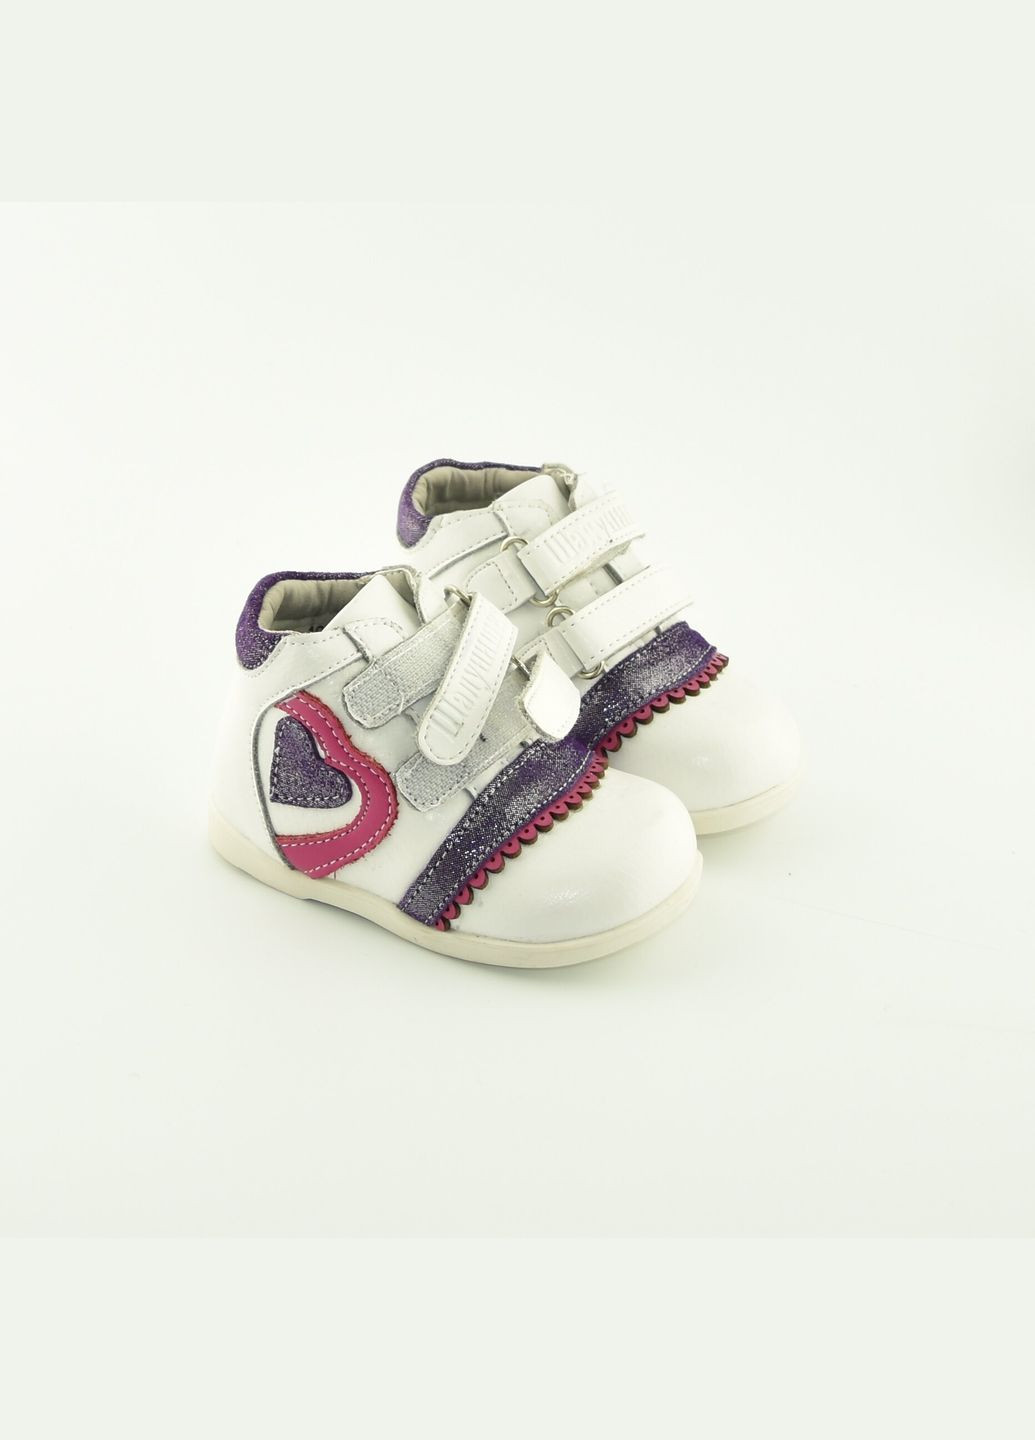 Цветные осенние ботинки детские для девочки 100-1 Шалунишка